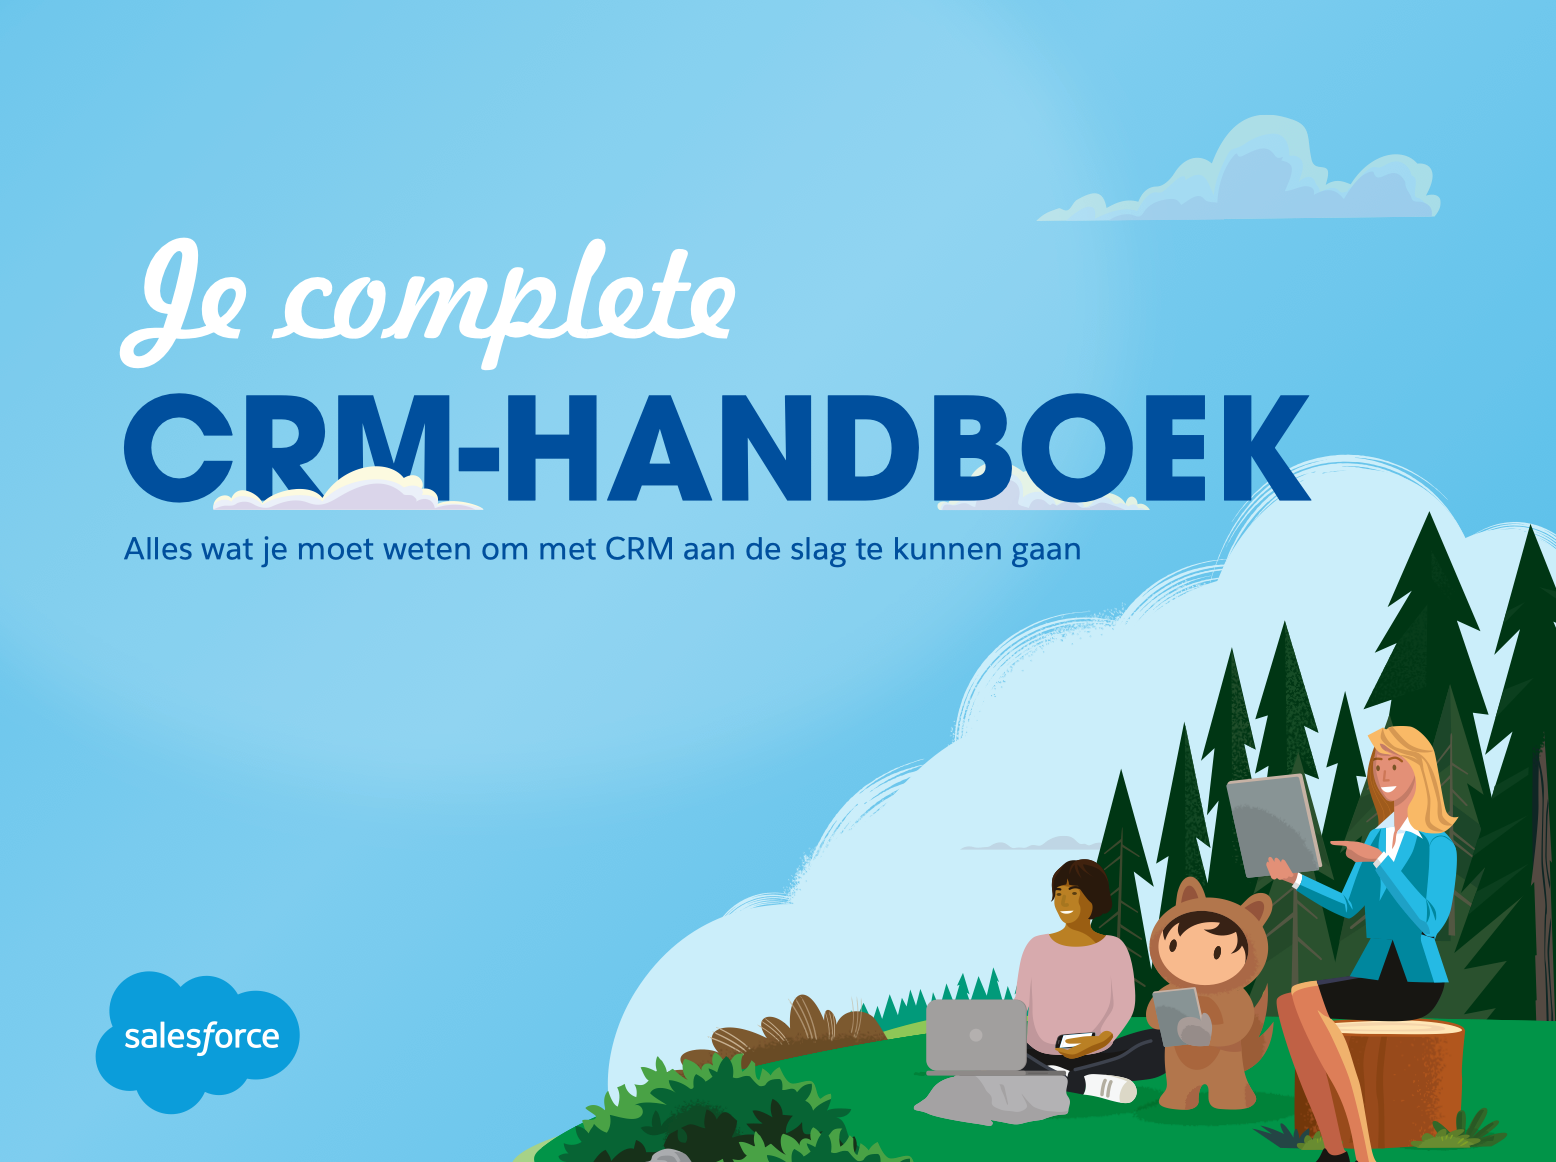 crm handboek - De complete CRM-handleiding